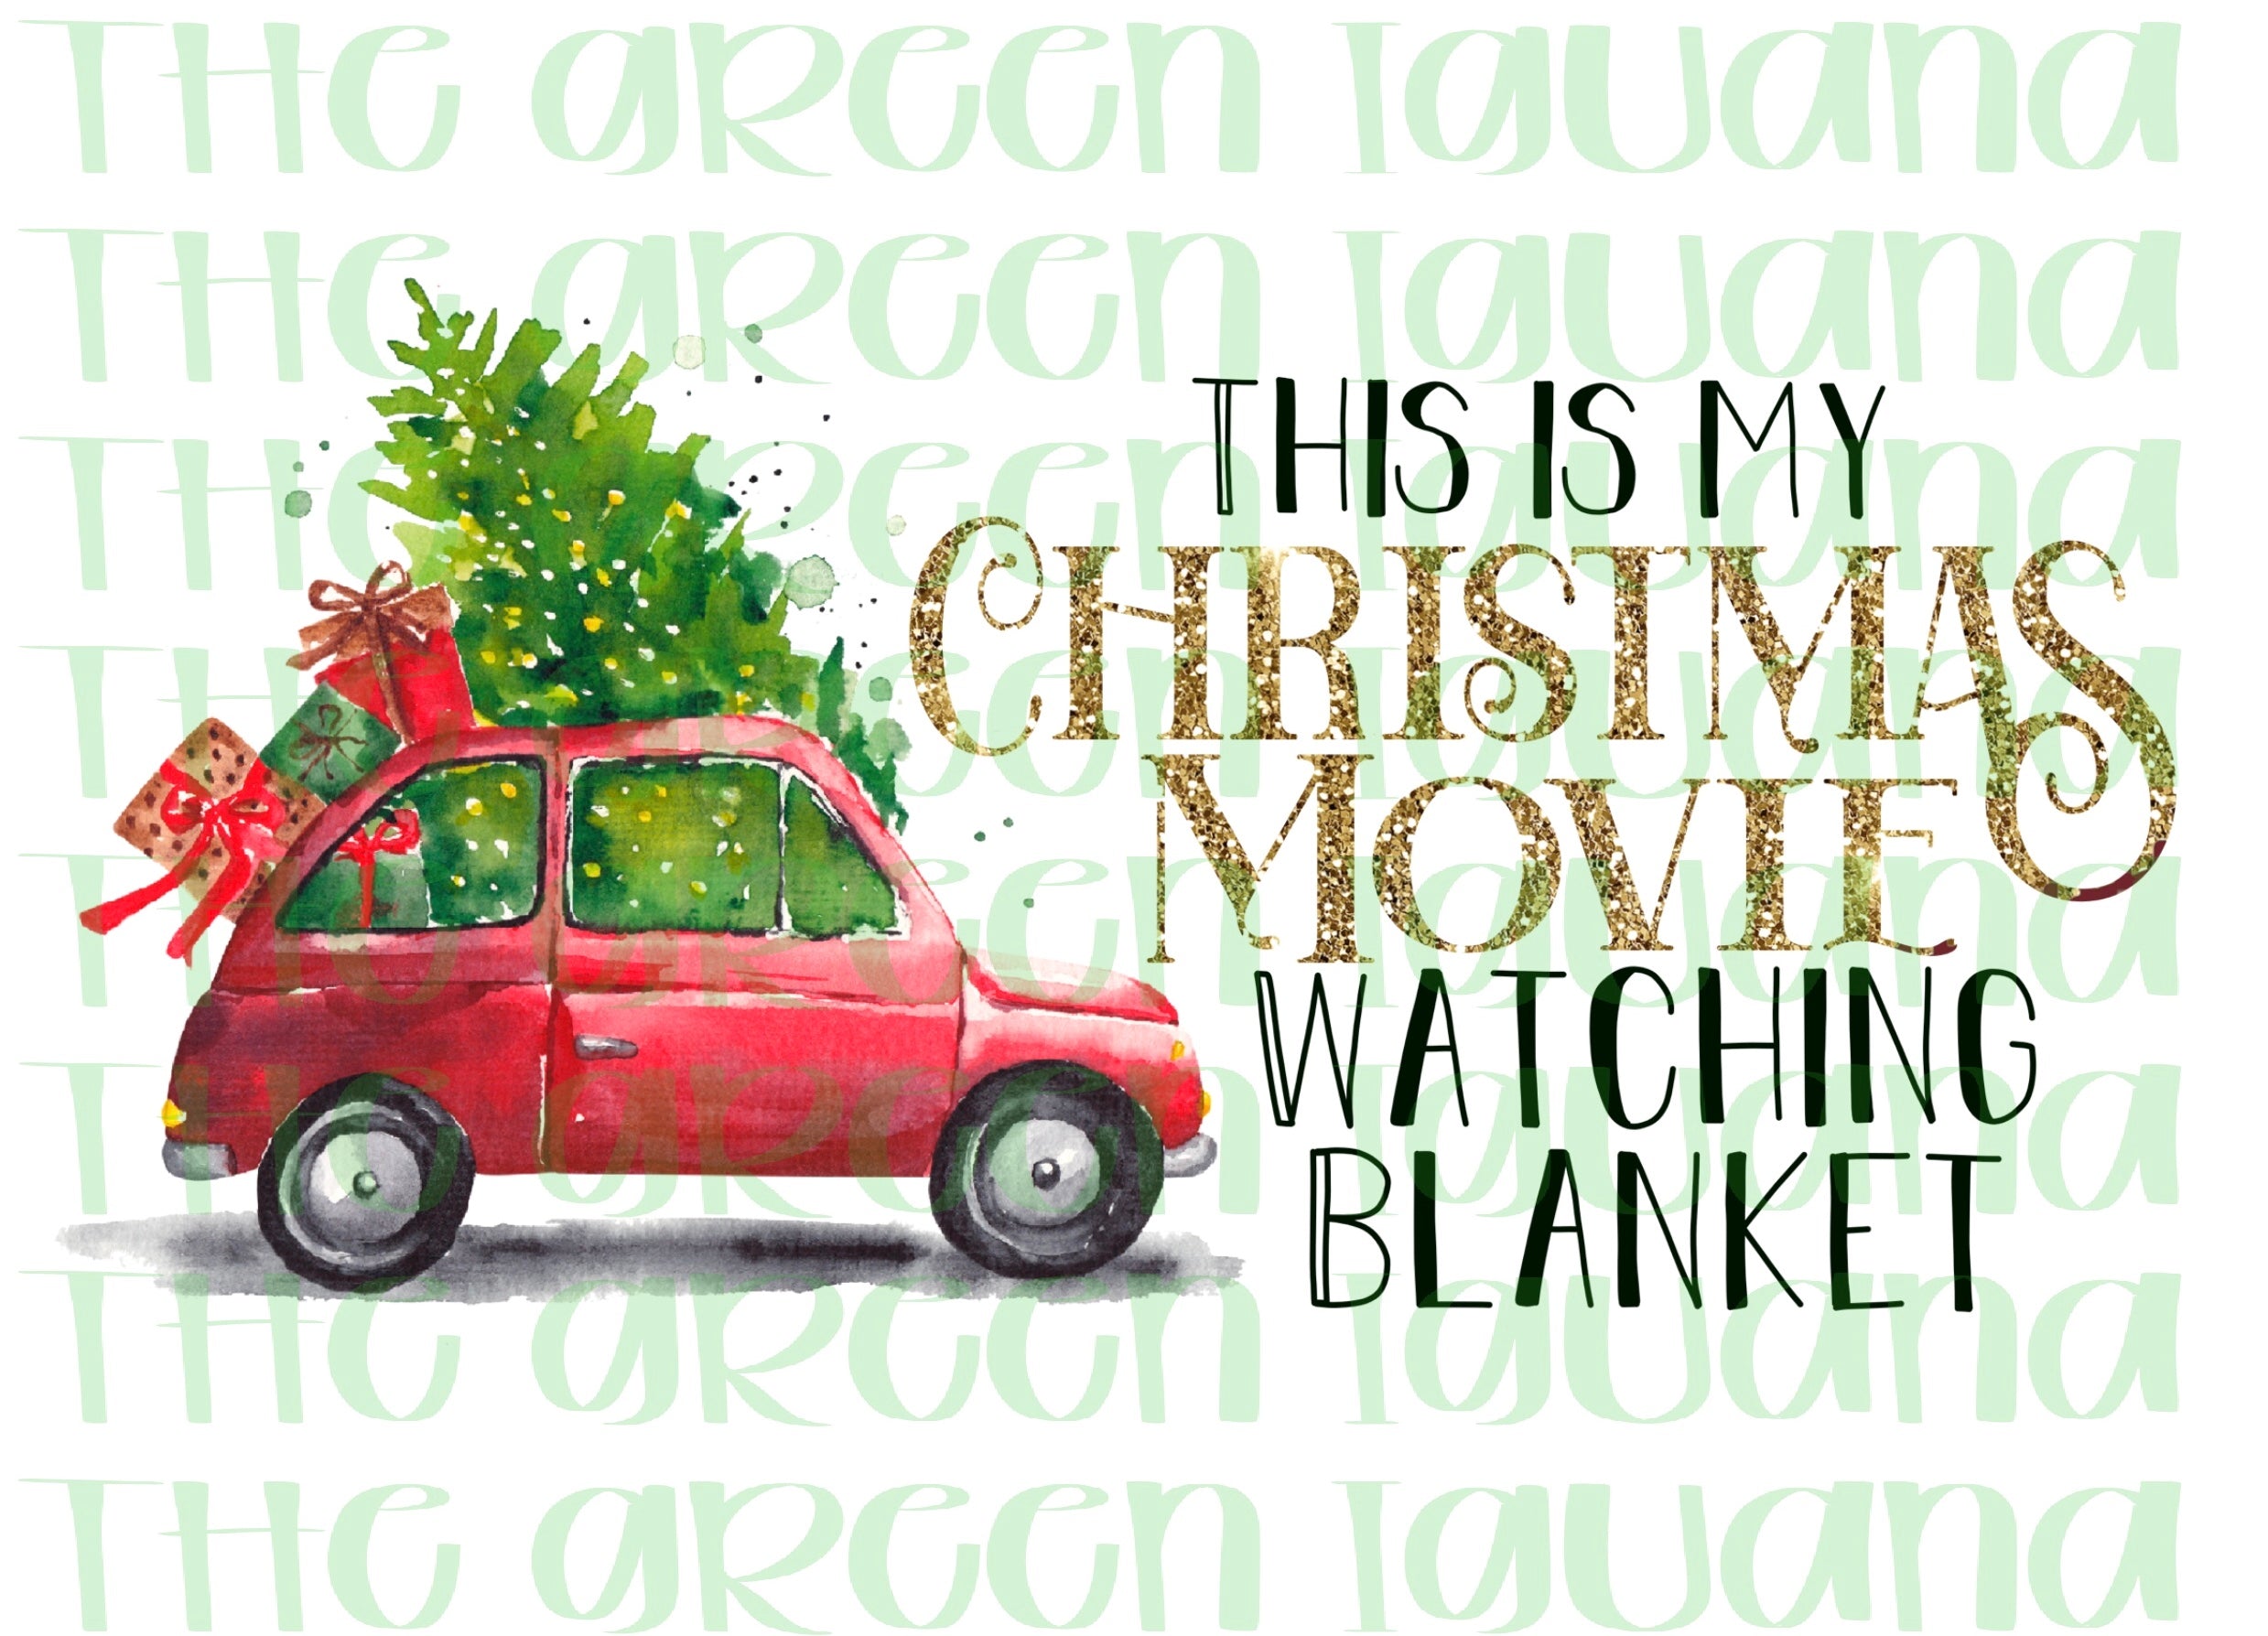 This is my Christmas movie watching blanket - DIGITAL